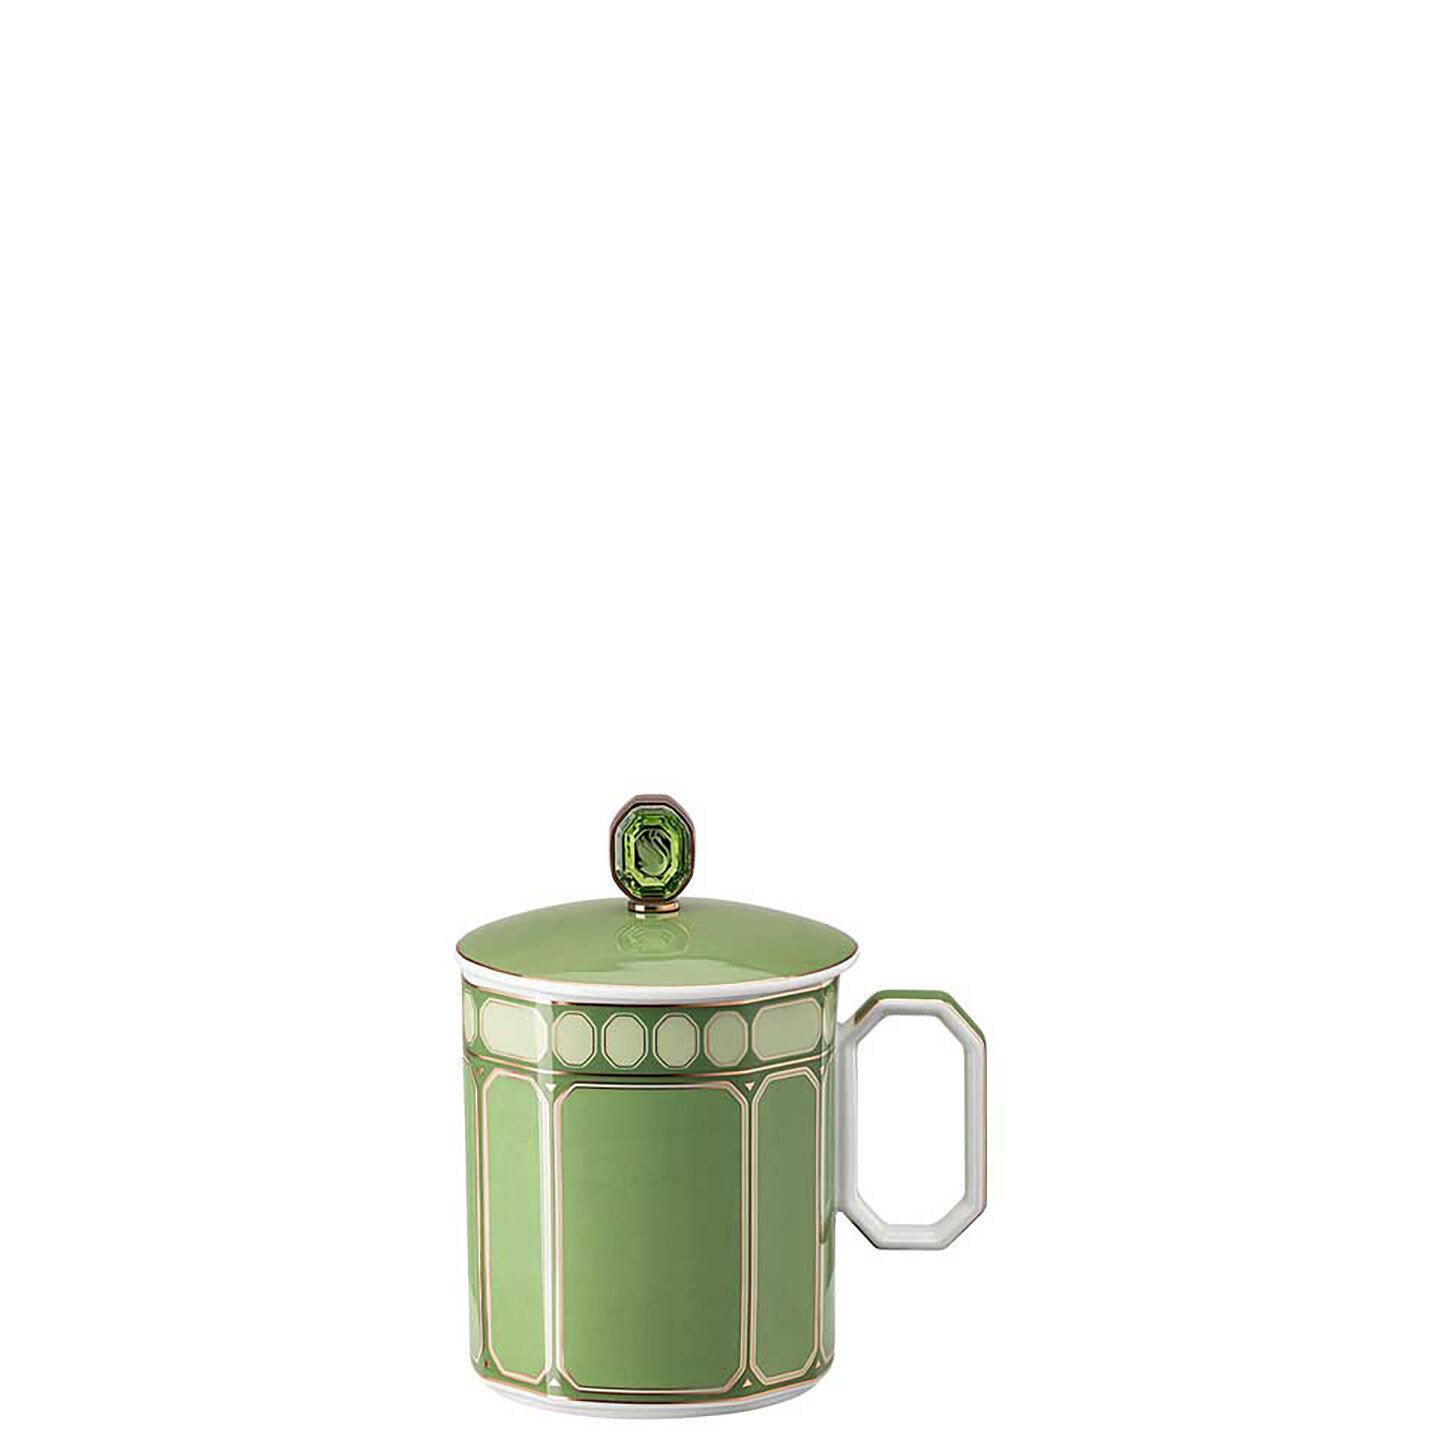 Rosenthal Swarovski Signum Mug with Lid 13 oz Fern Green 10570-426349-15482